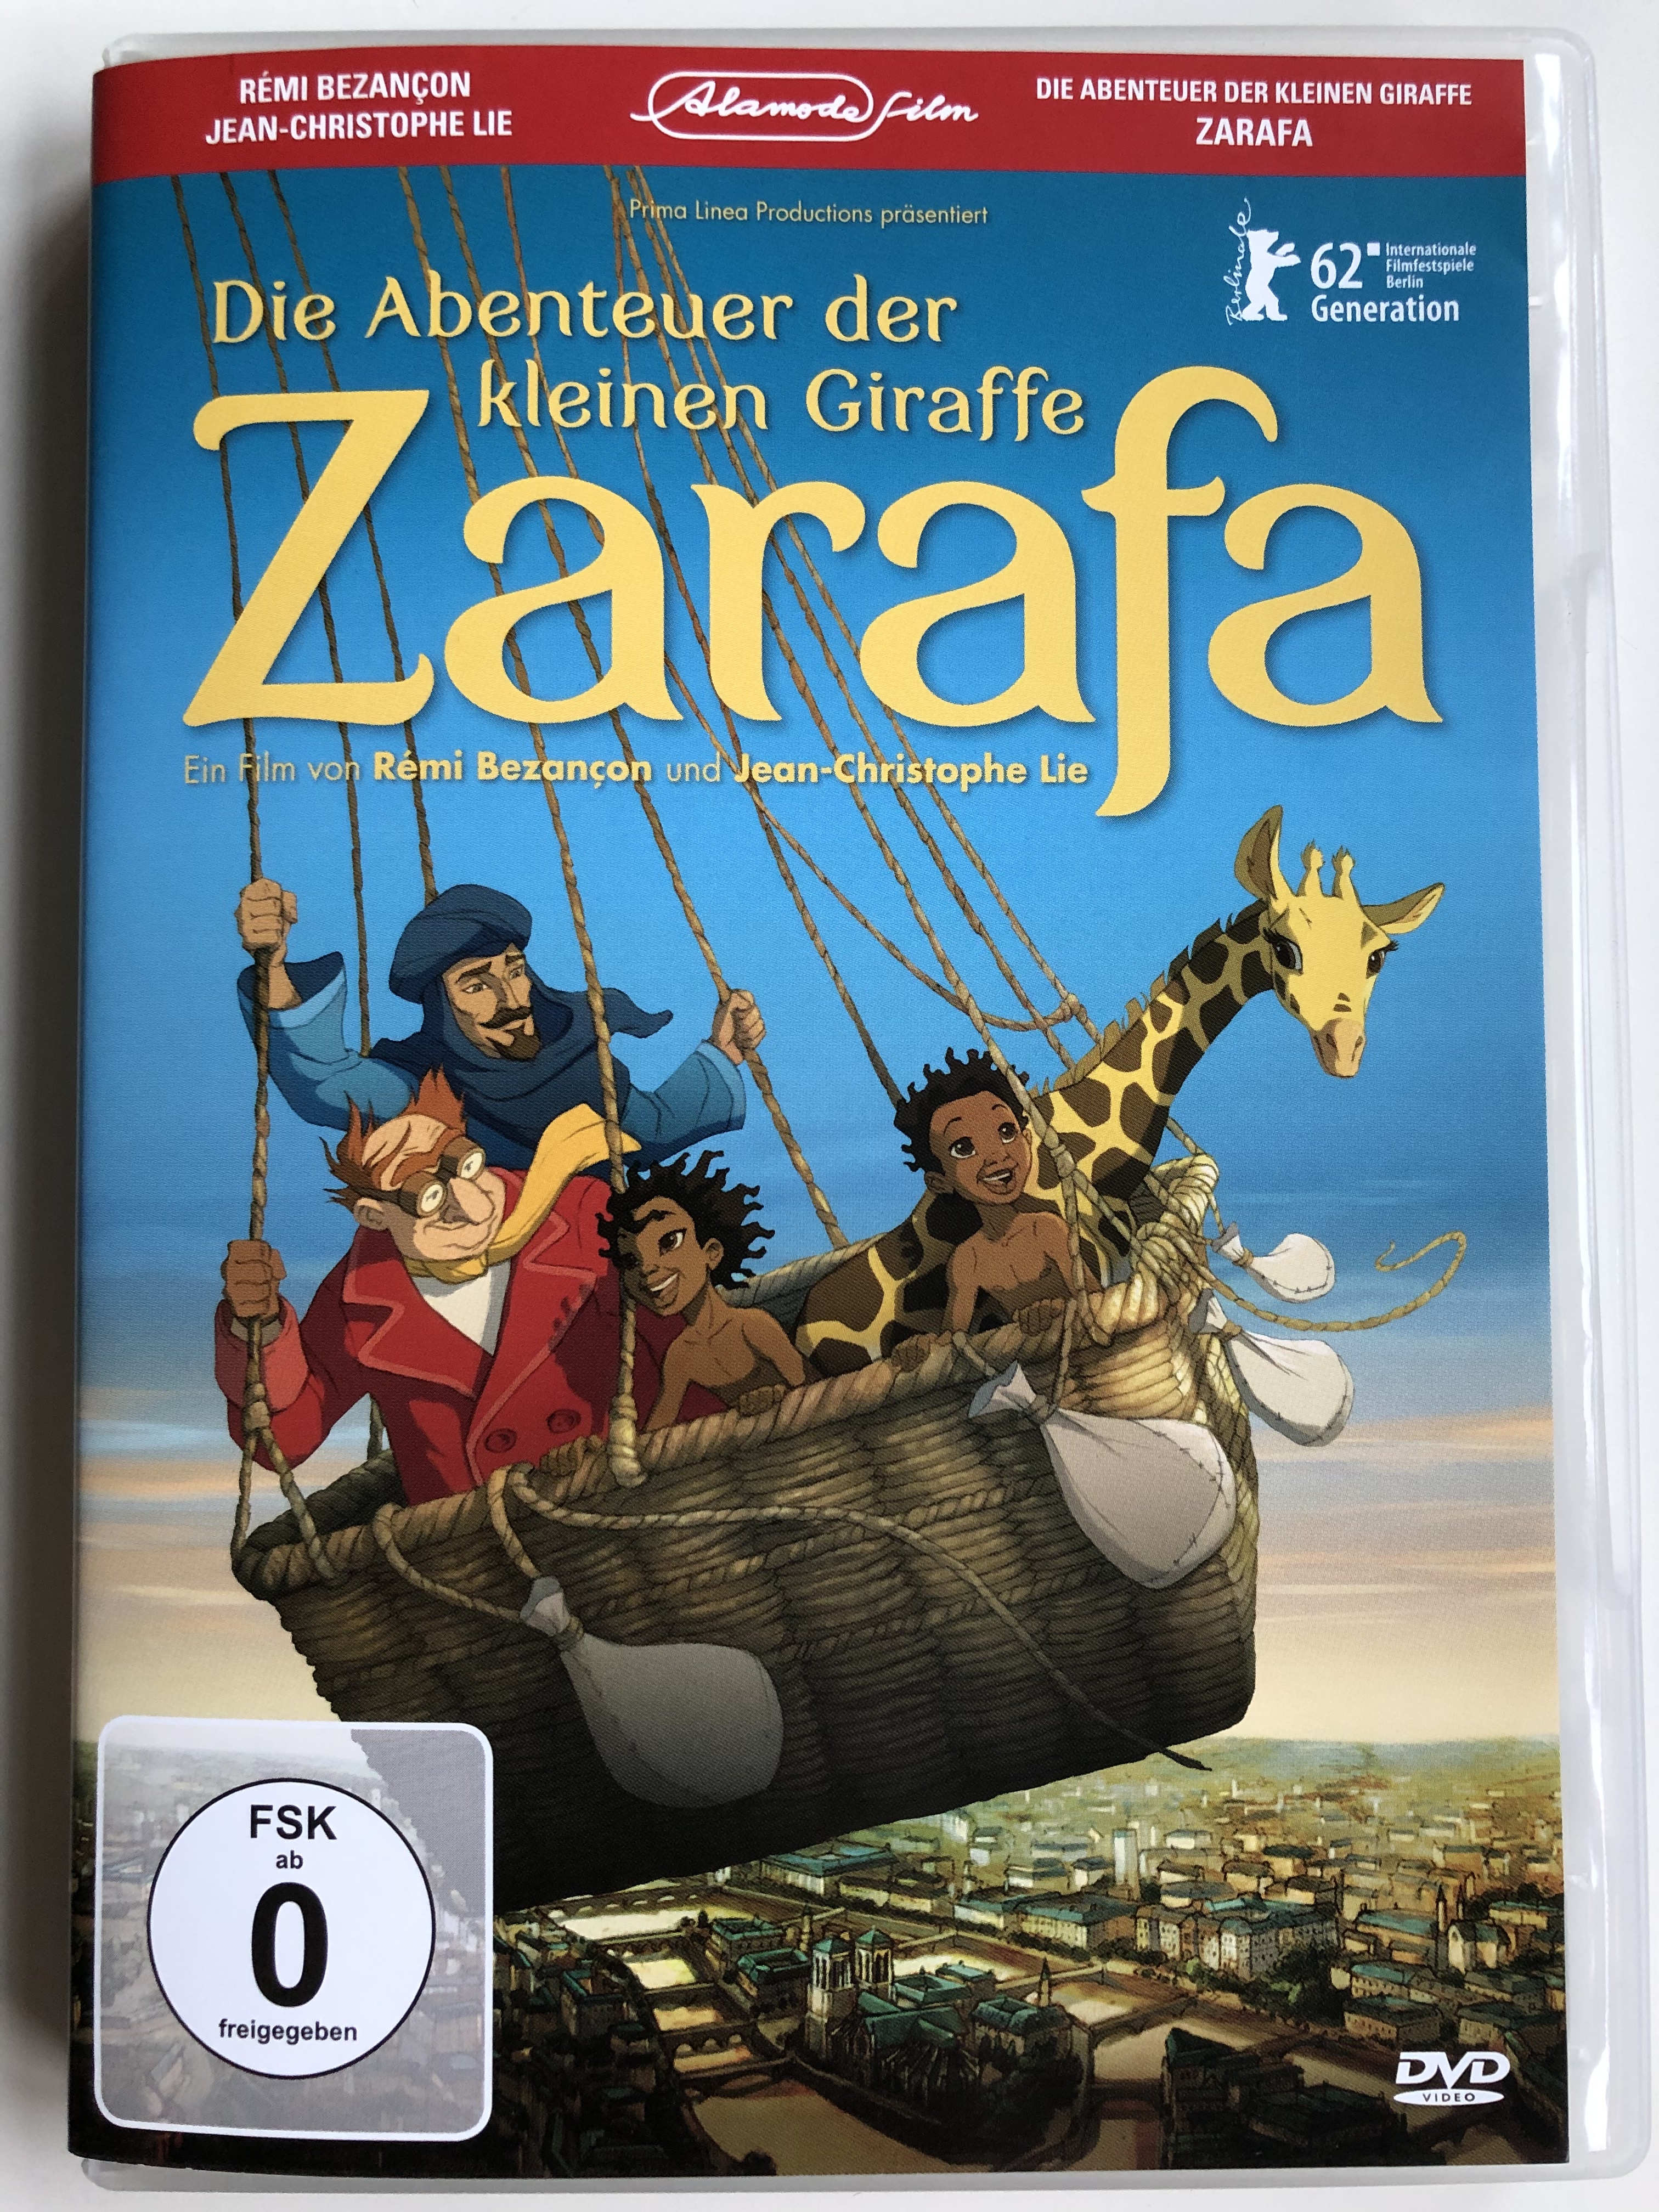 die-abenteuer-der-kleinen-giraffe-zarafa-dvd-2012-zarafa-1.jpg